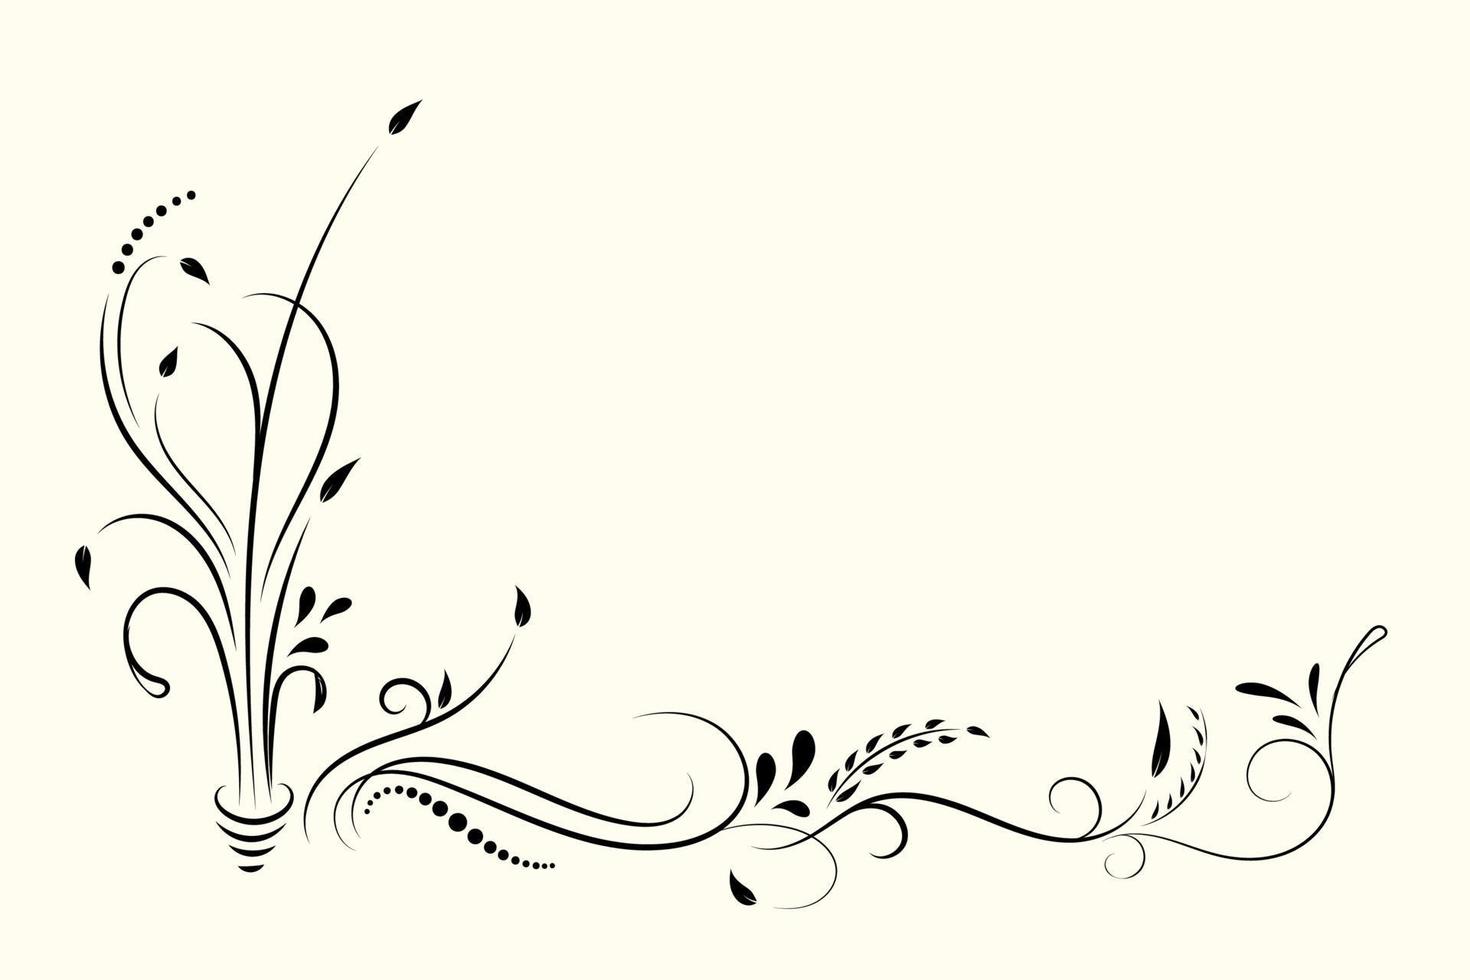 vintage bloemen ornament, hand getrokken decoratief element, vectorillustratie van bloemen element geïsoleerd op een witte achtergrond, ontwerp voor pagina decoratie kaarten, bruiloft, banner, frames vector